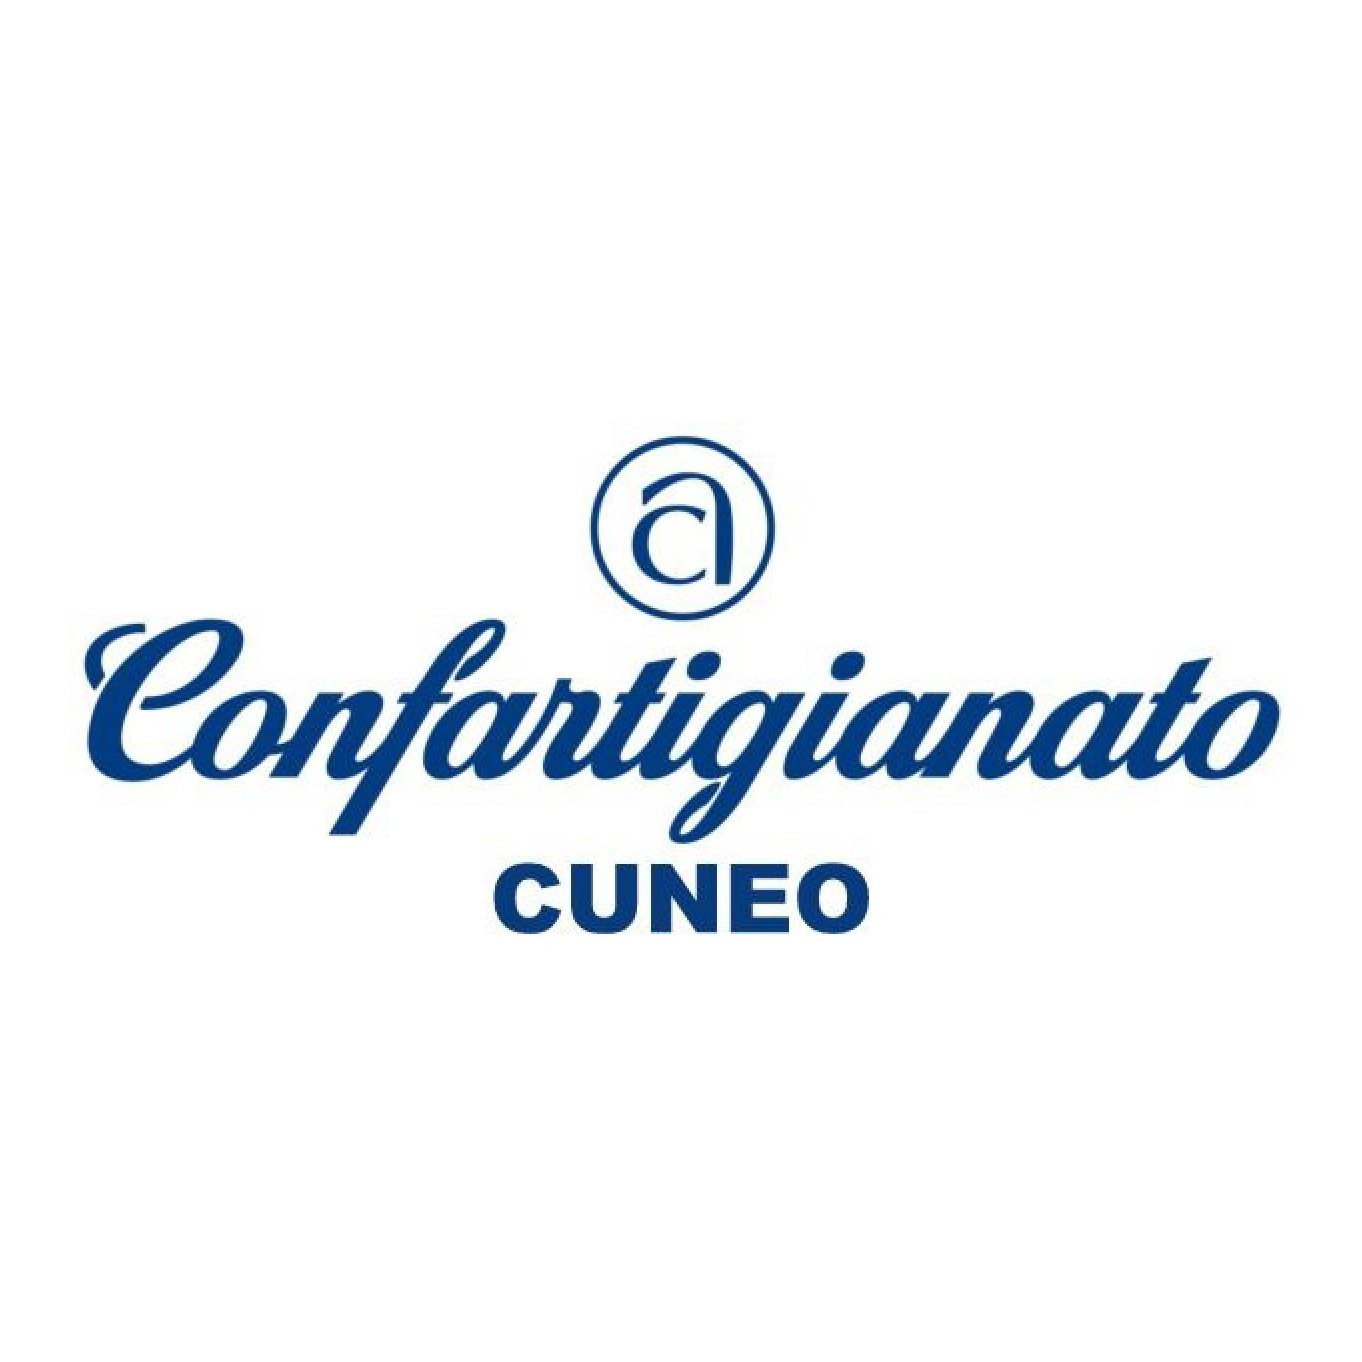 L'organizzazione di riferimento del comparto degli artigiani e delle PMI in provincia di Cuneo. 
#cuneo #imprese #artigianato #pmi #confartigianatoimpresecuneo